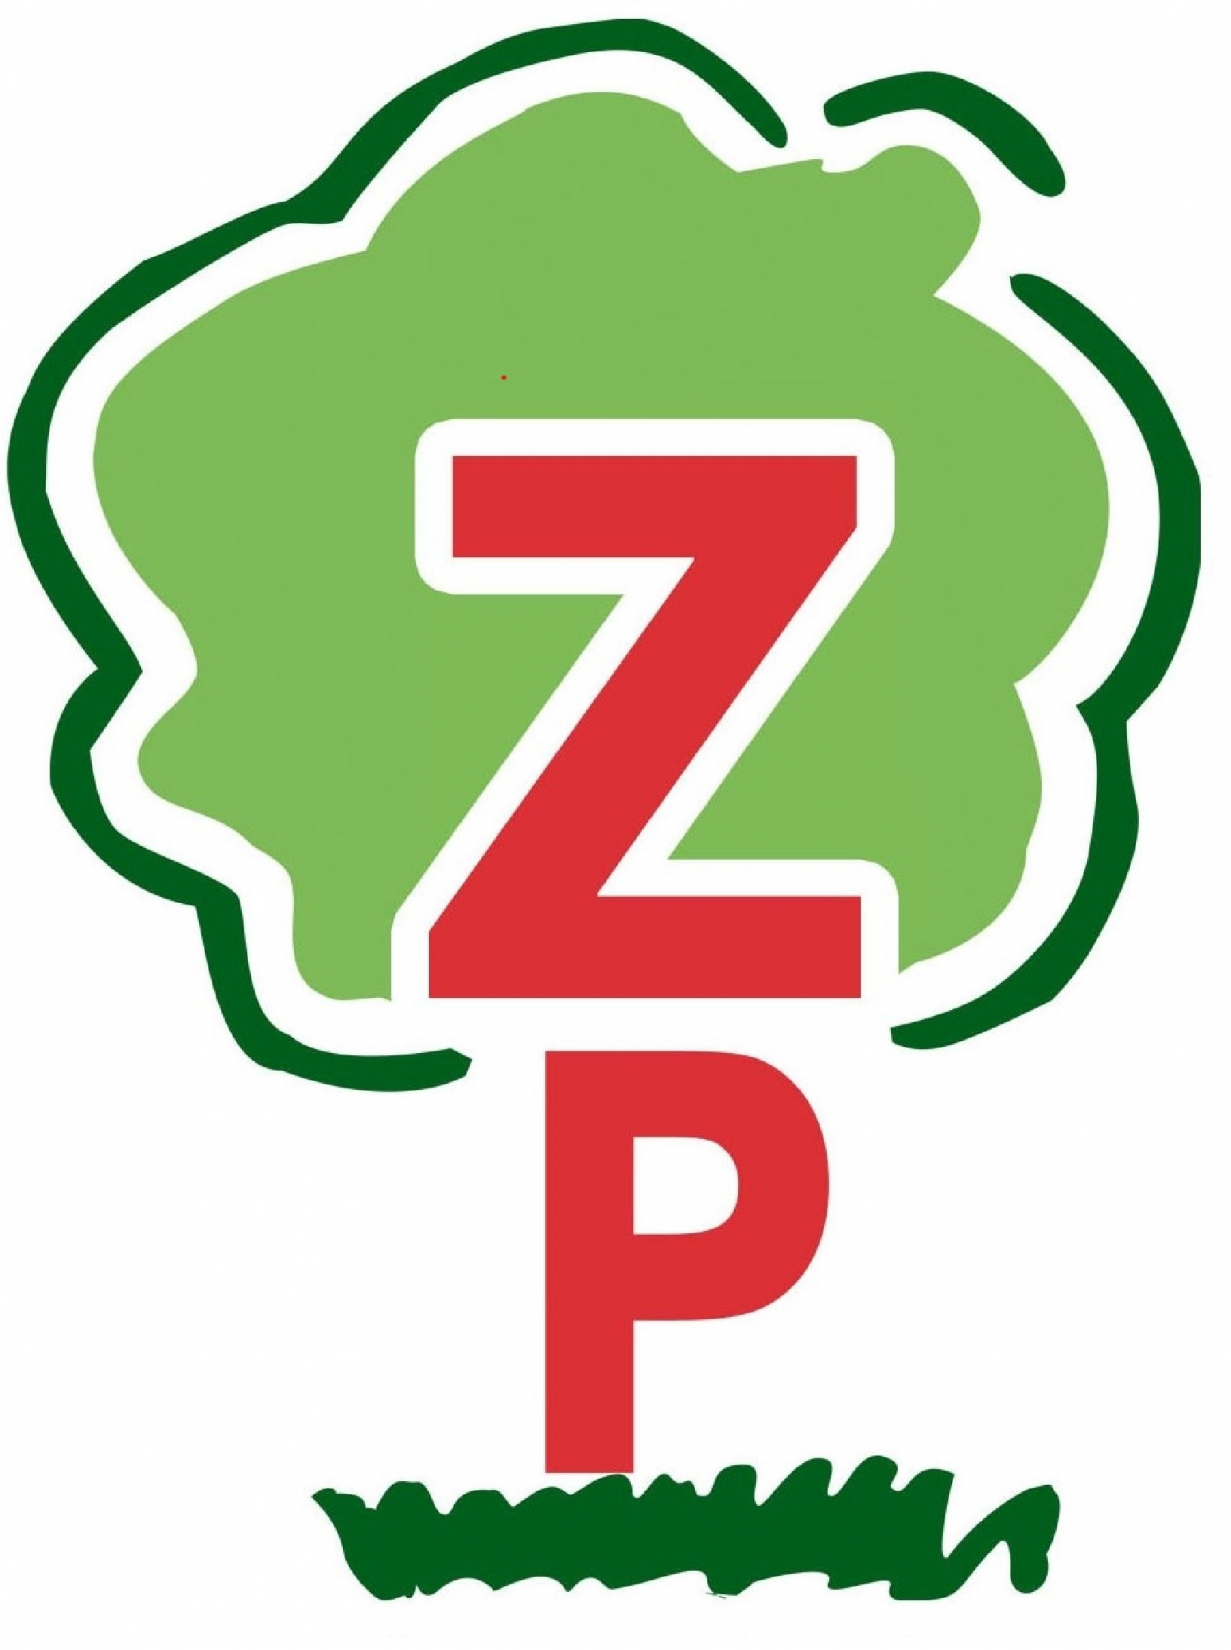 logo-zp-website